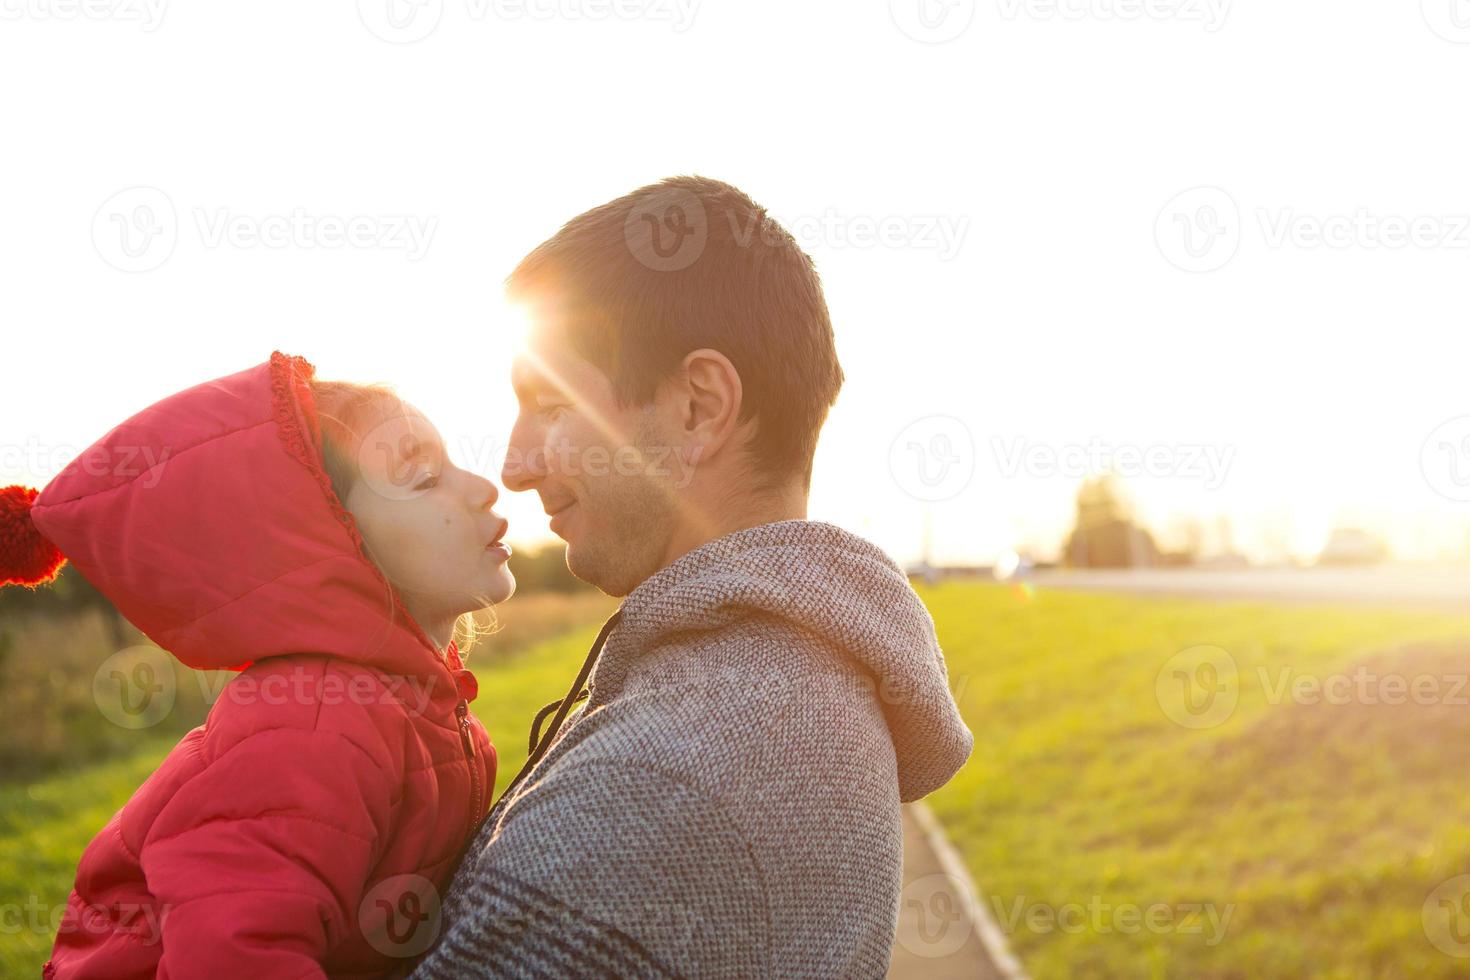 petite fille en veste rouge avec une capuche embrasse et embrasse son père, sourit, touche son nez. famille heureuse, émotions des enfants, fête des pères, rayons lumineux du soleil, apparence caucasienne. espace pour le texte. photo